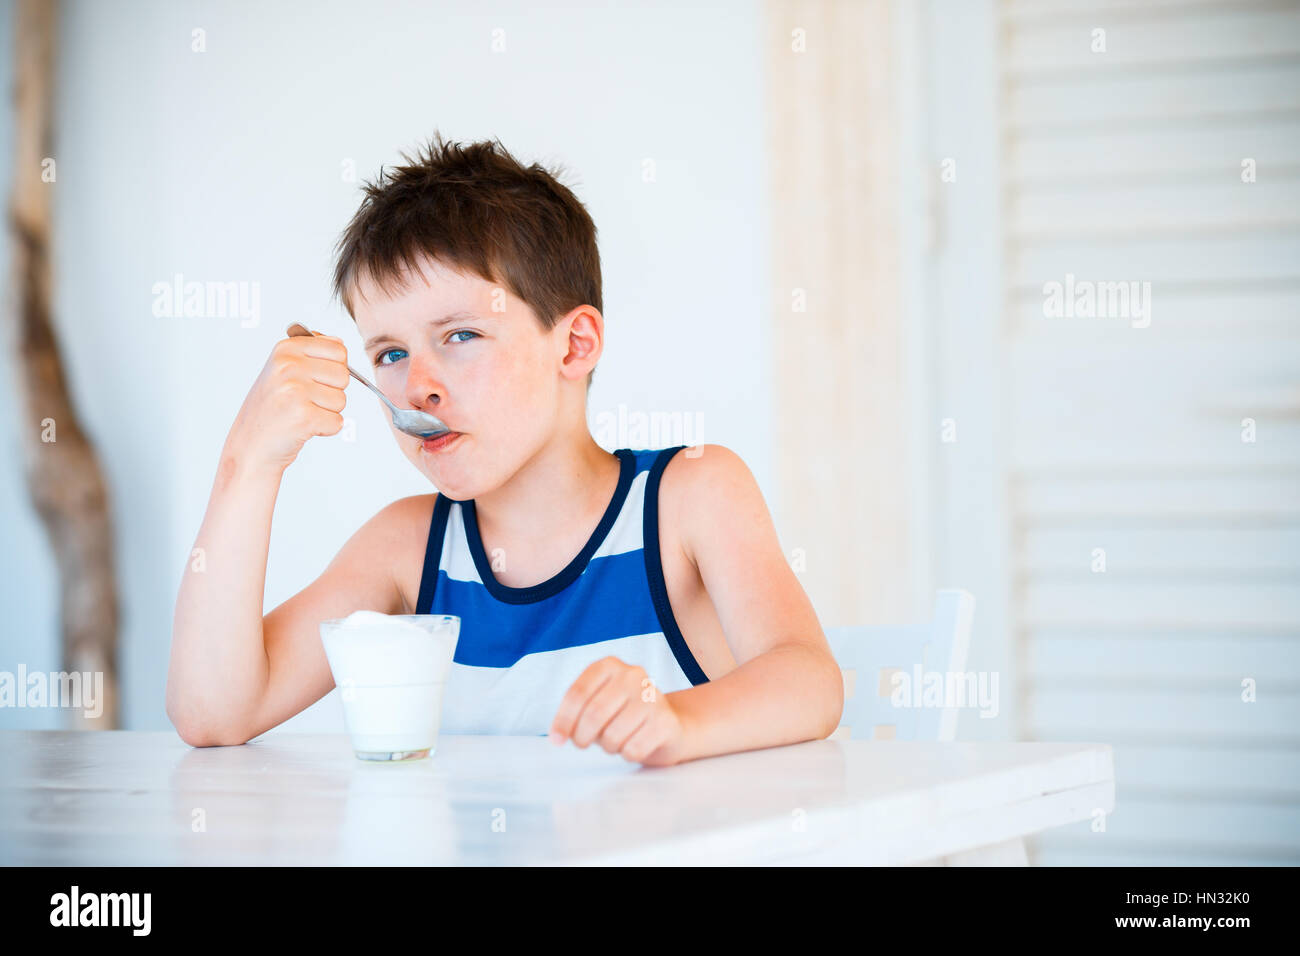 Retrato de niño se niega a comer delicioso yogur Foto de stock